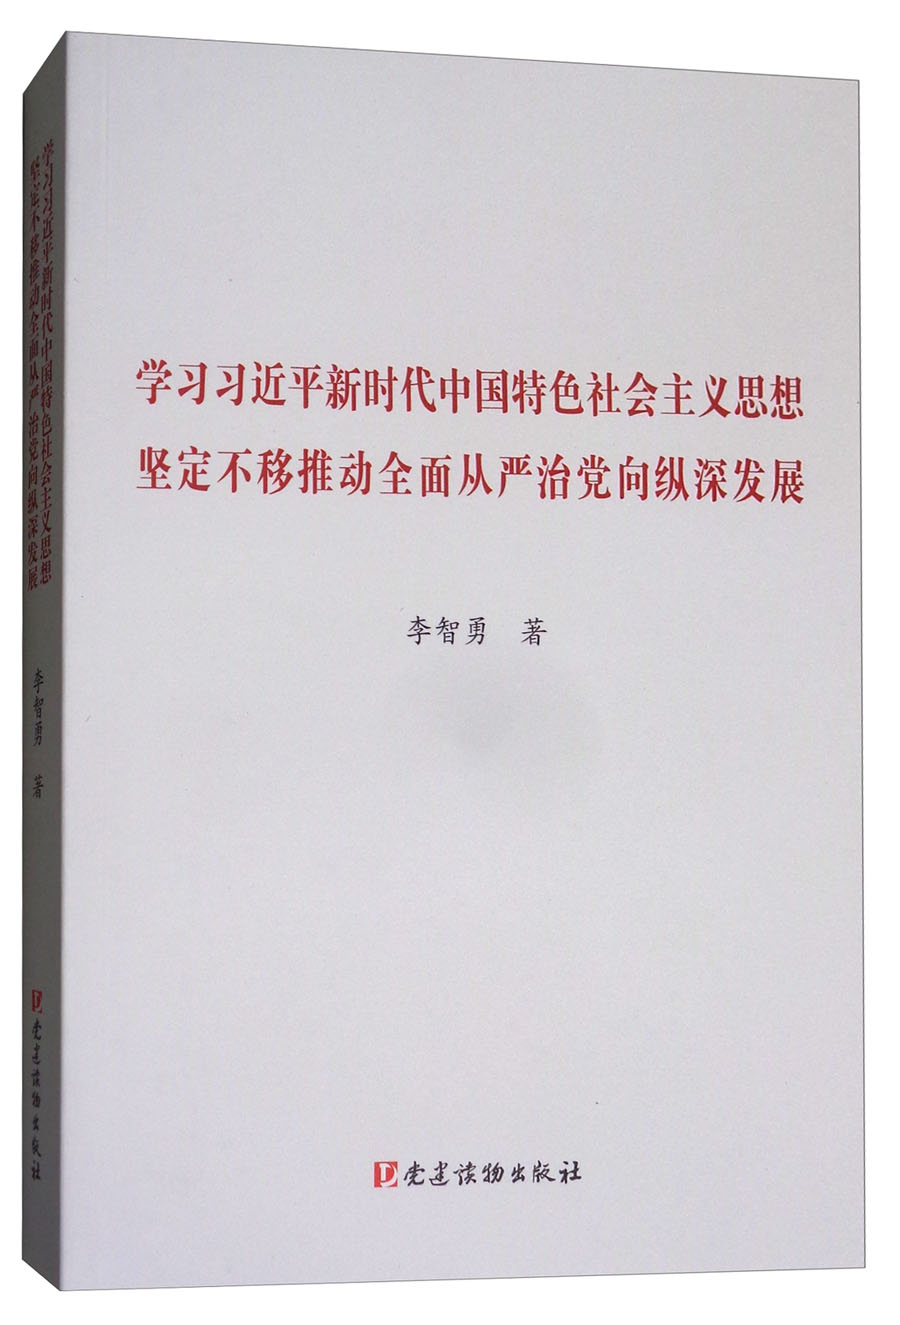 学习习近平新时代中国特色社会主义思想坚定不移推动全面从严治党向纵深发展 pdf格式下载